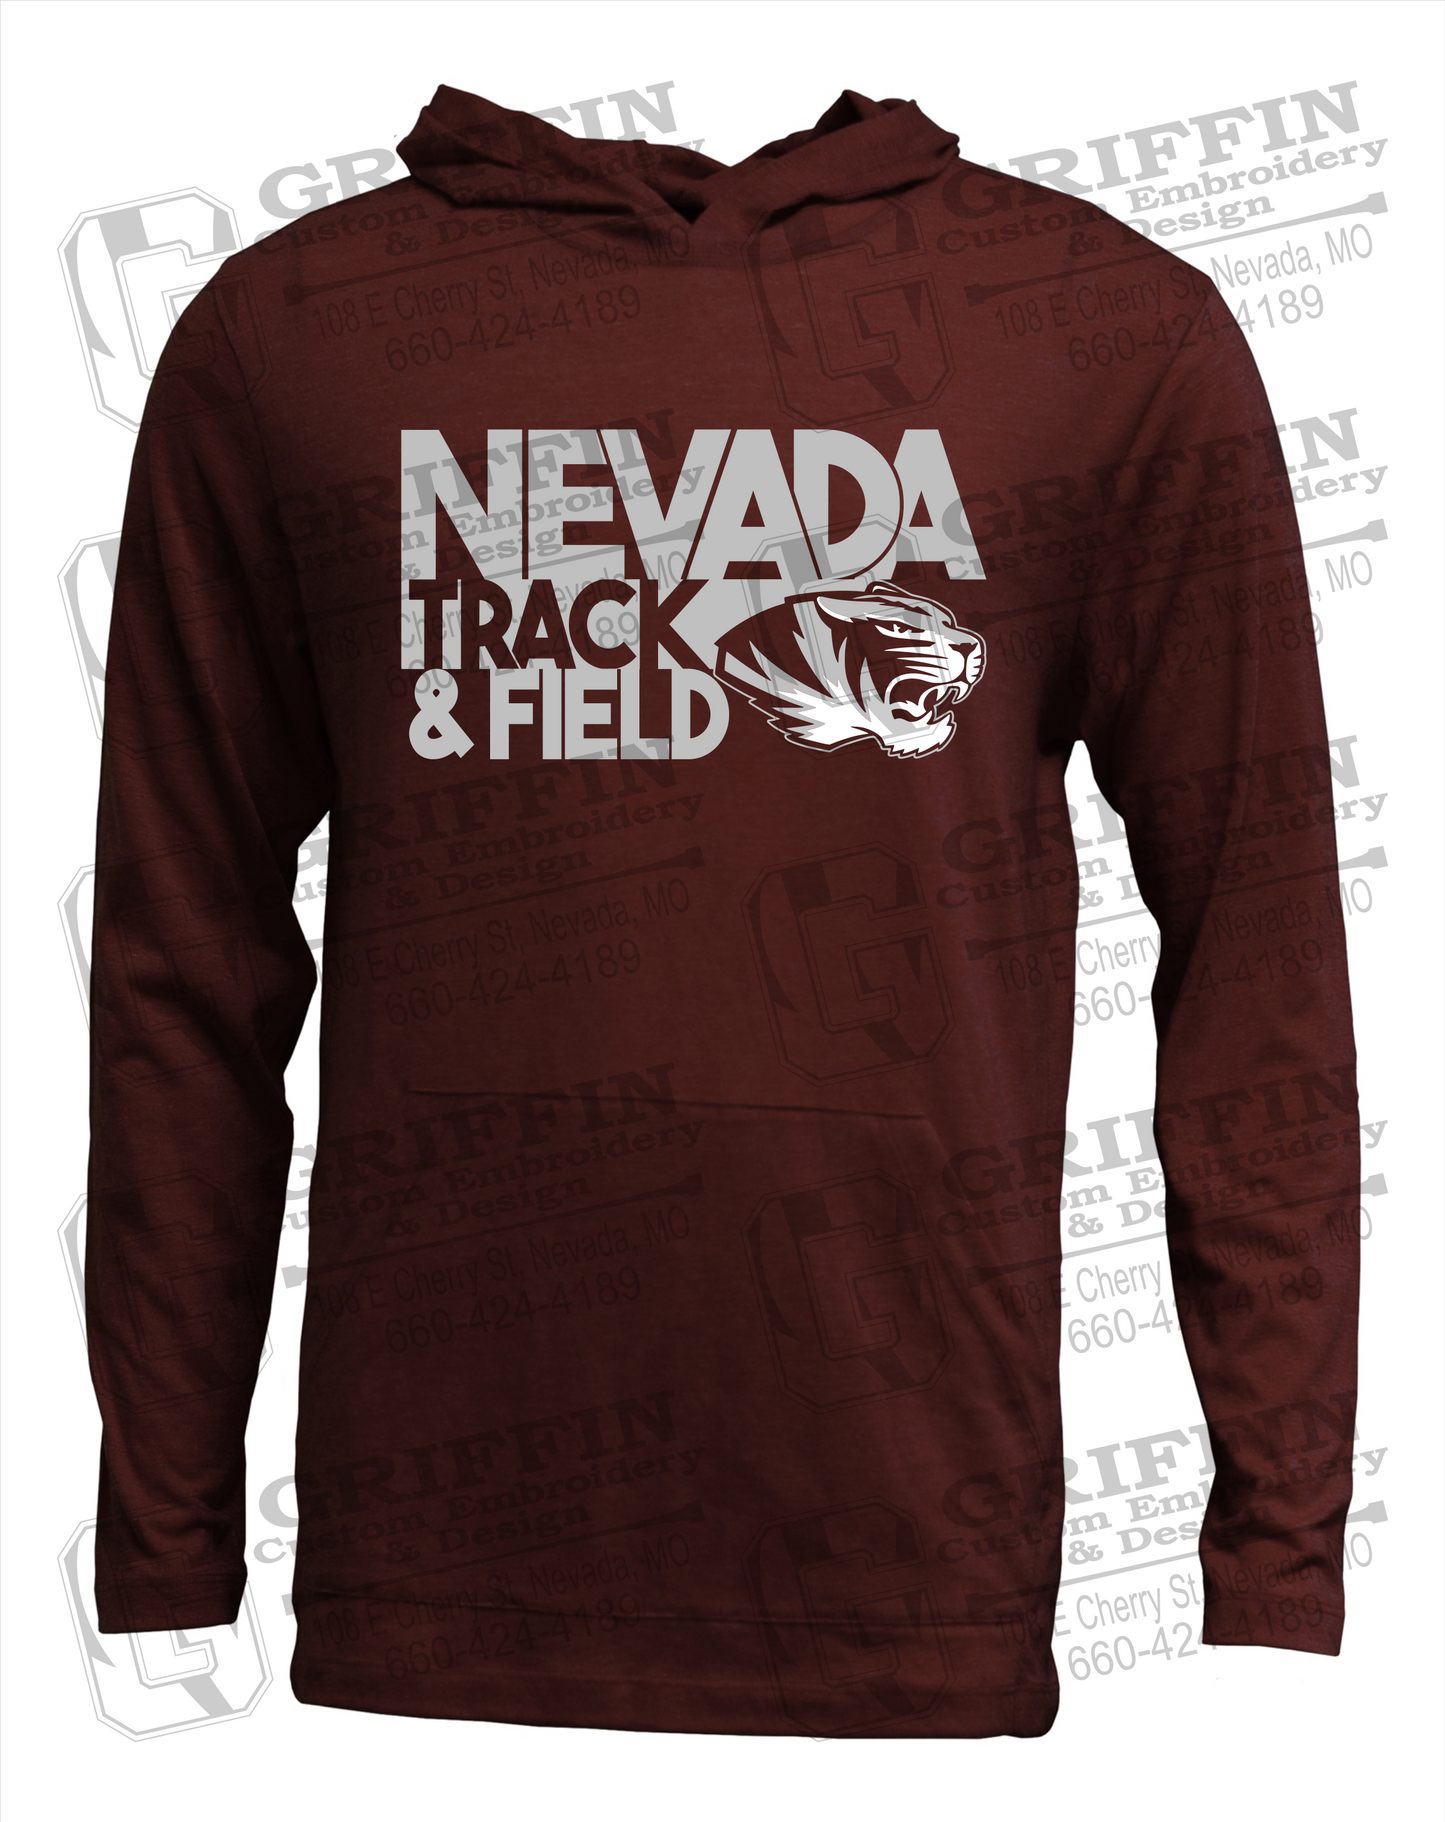 Soft-Tek T-Shirt Hoodie - Track & Field - Nevada Tigers 24-Q